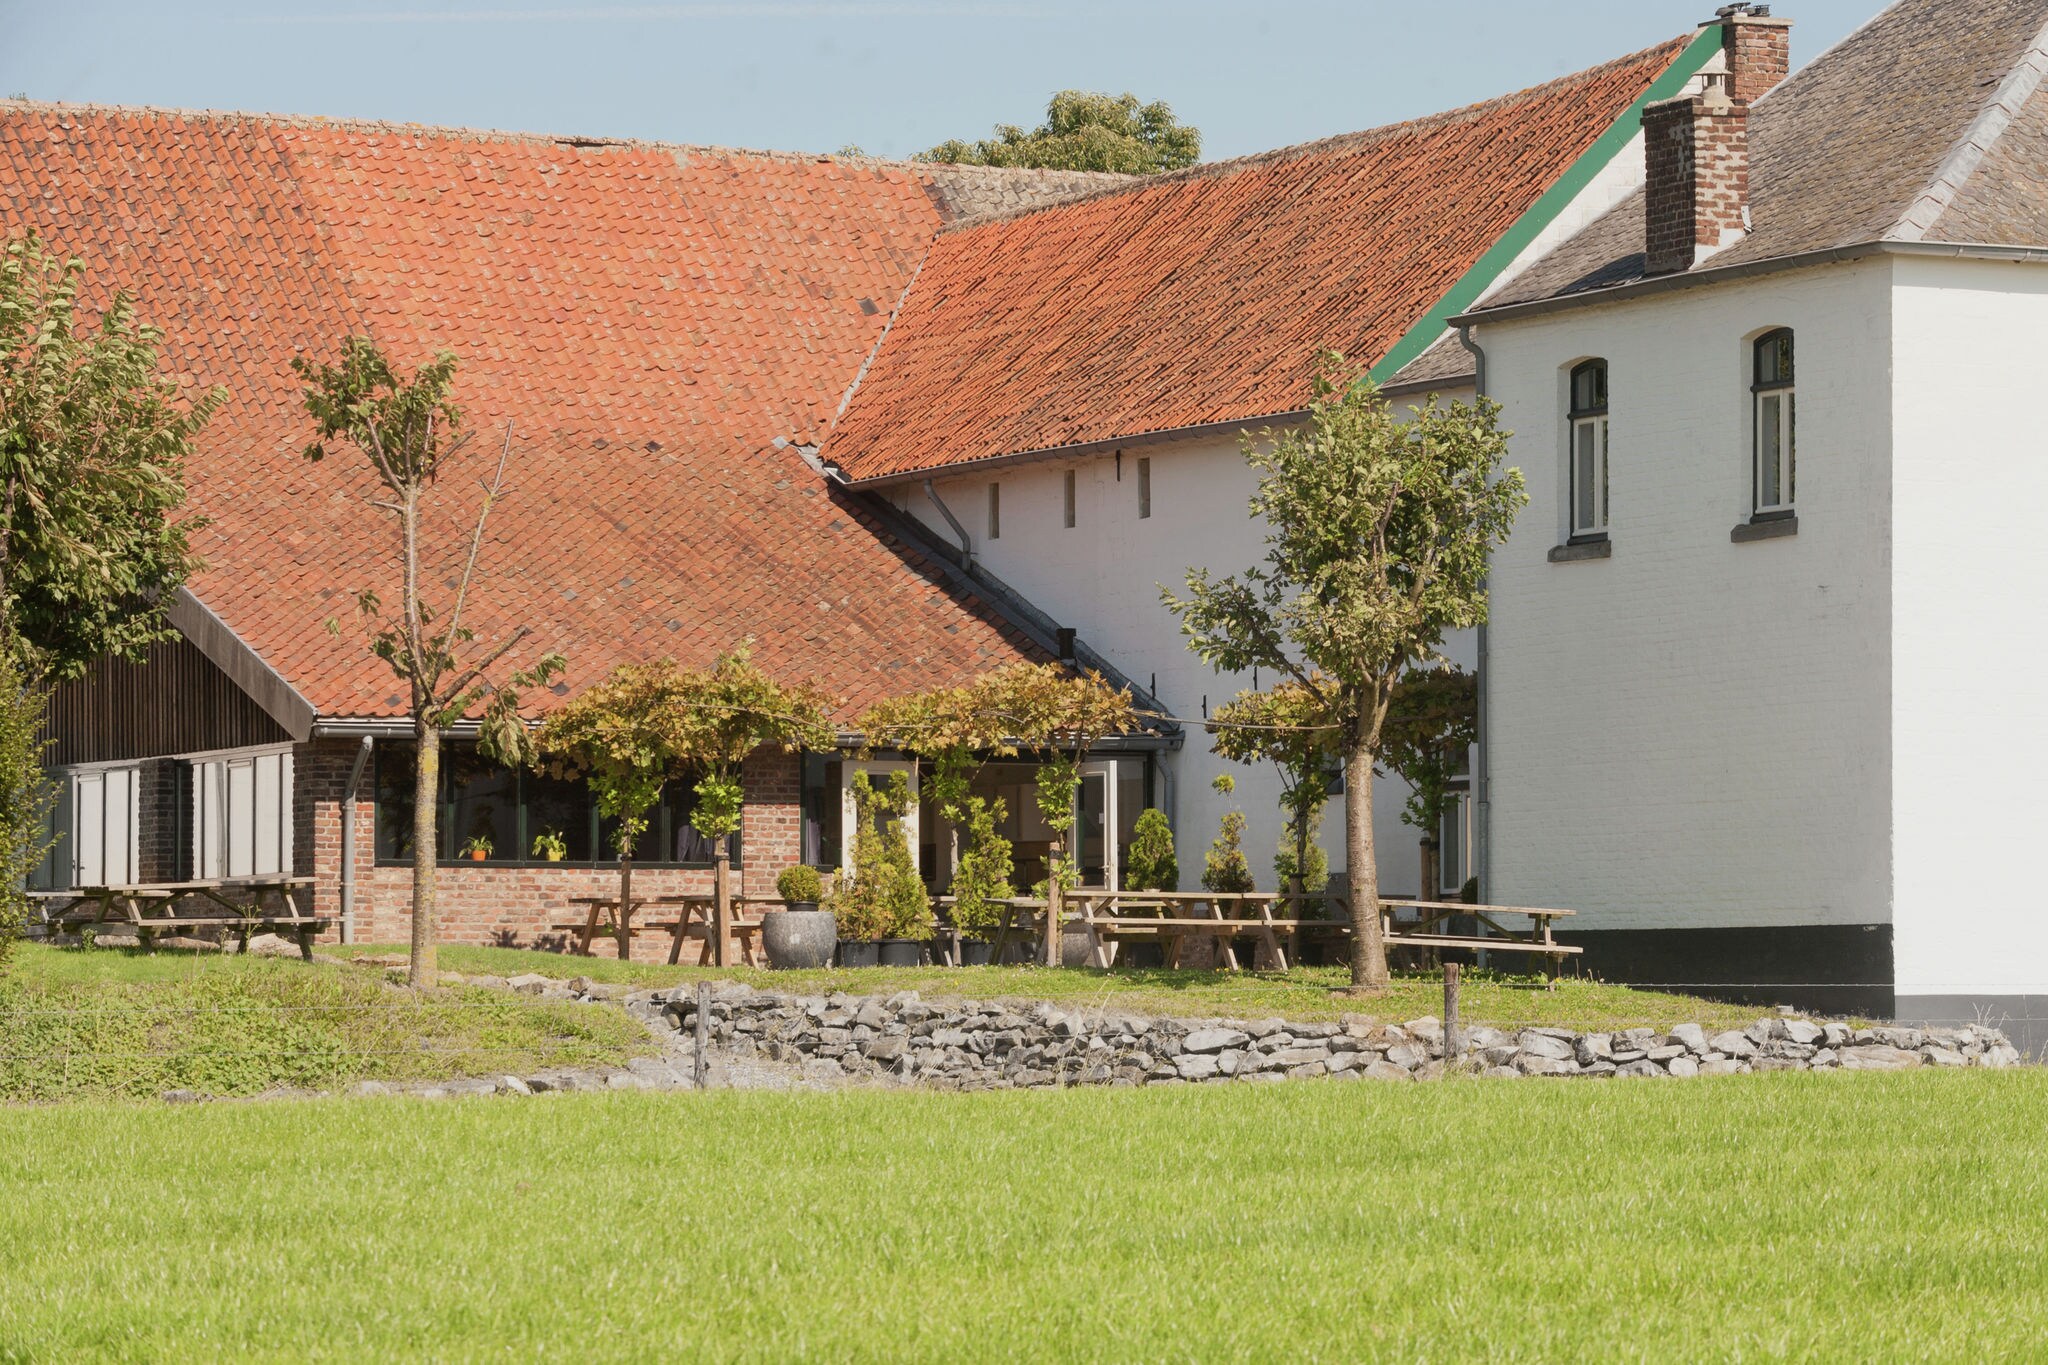 Vakantiehuis in Limburg dichtbij bos